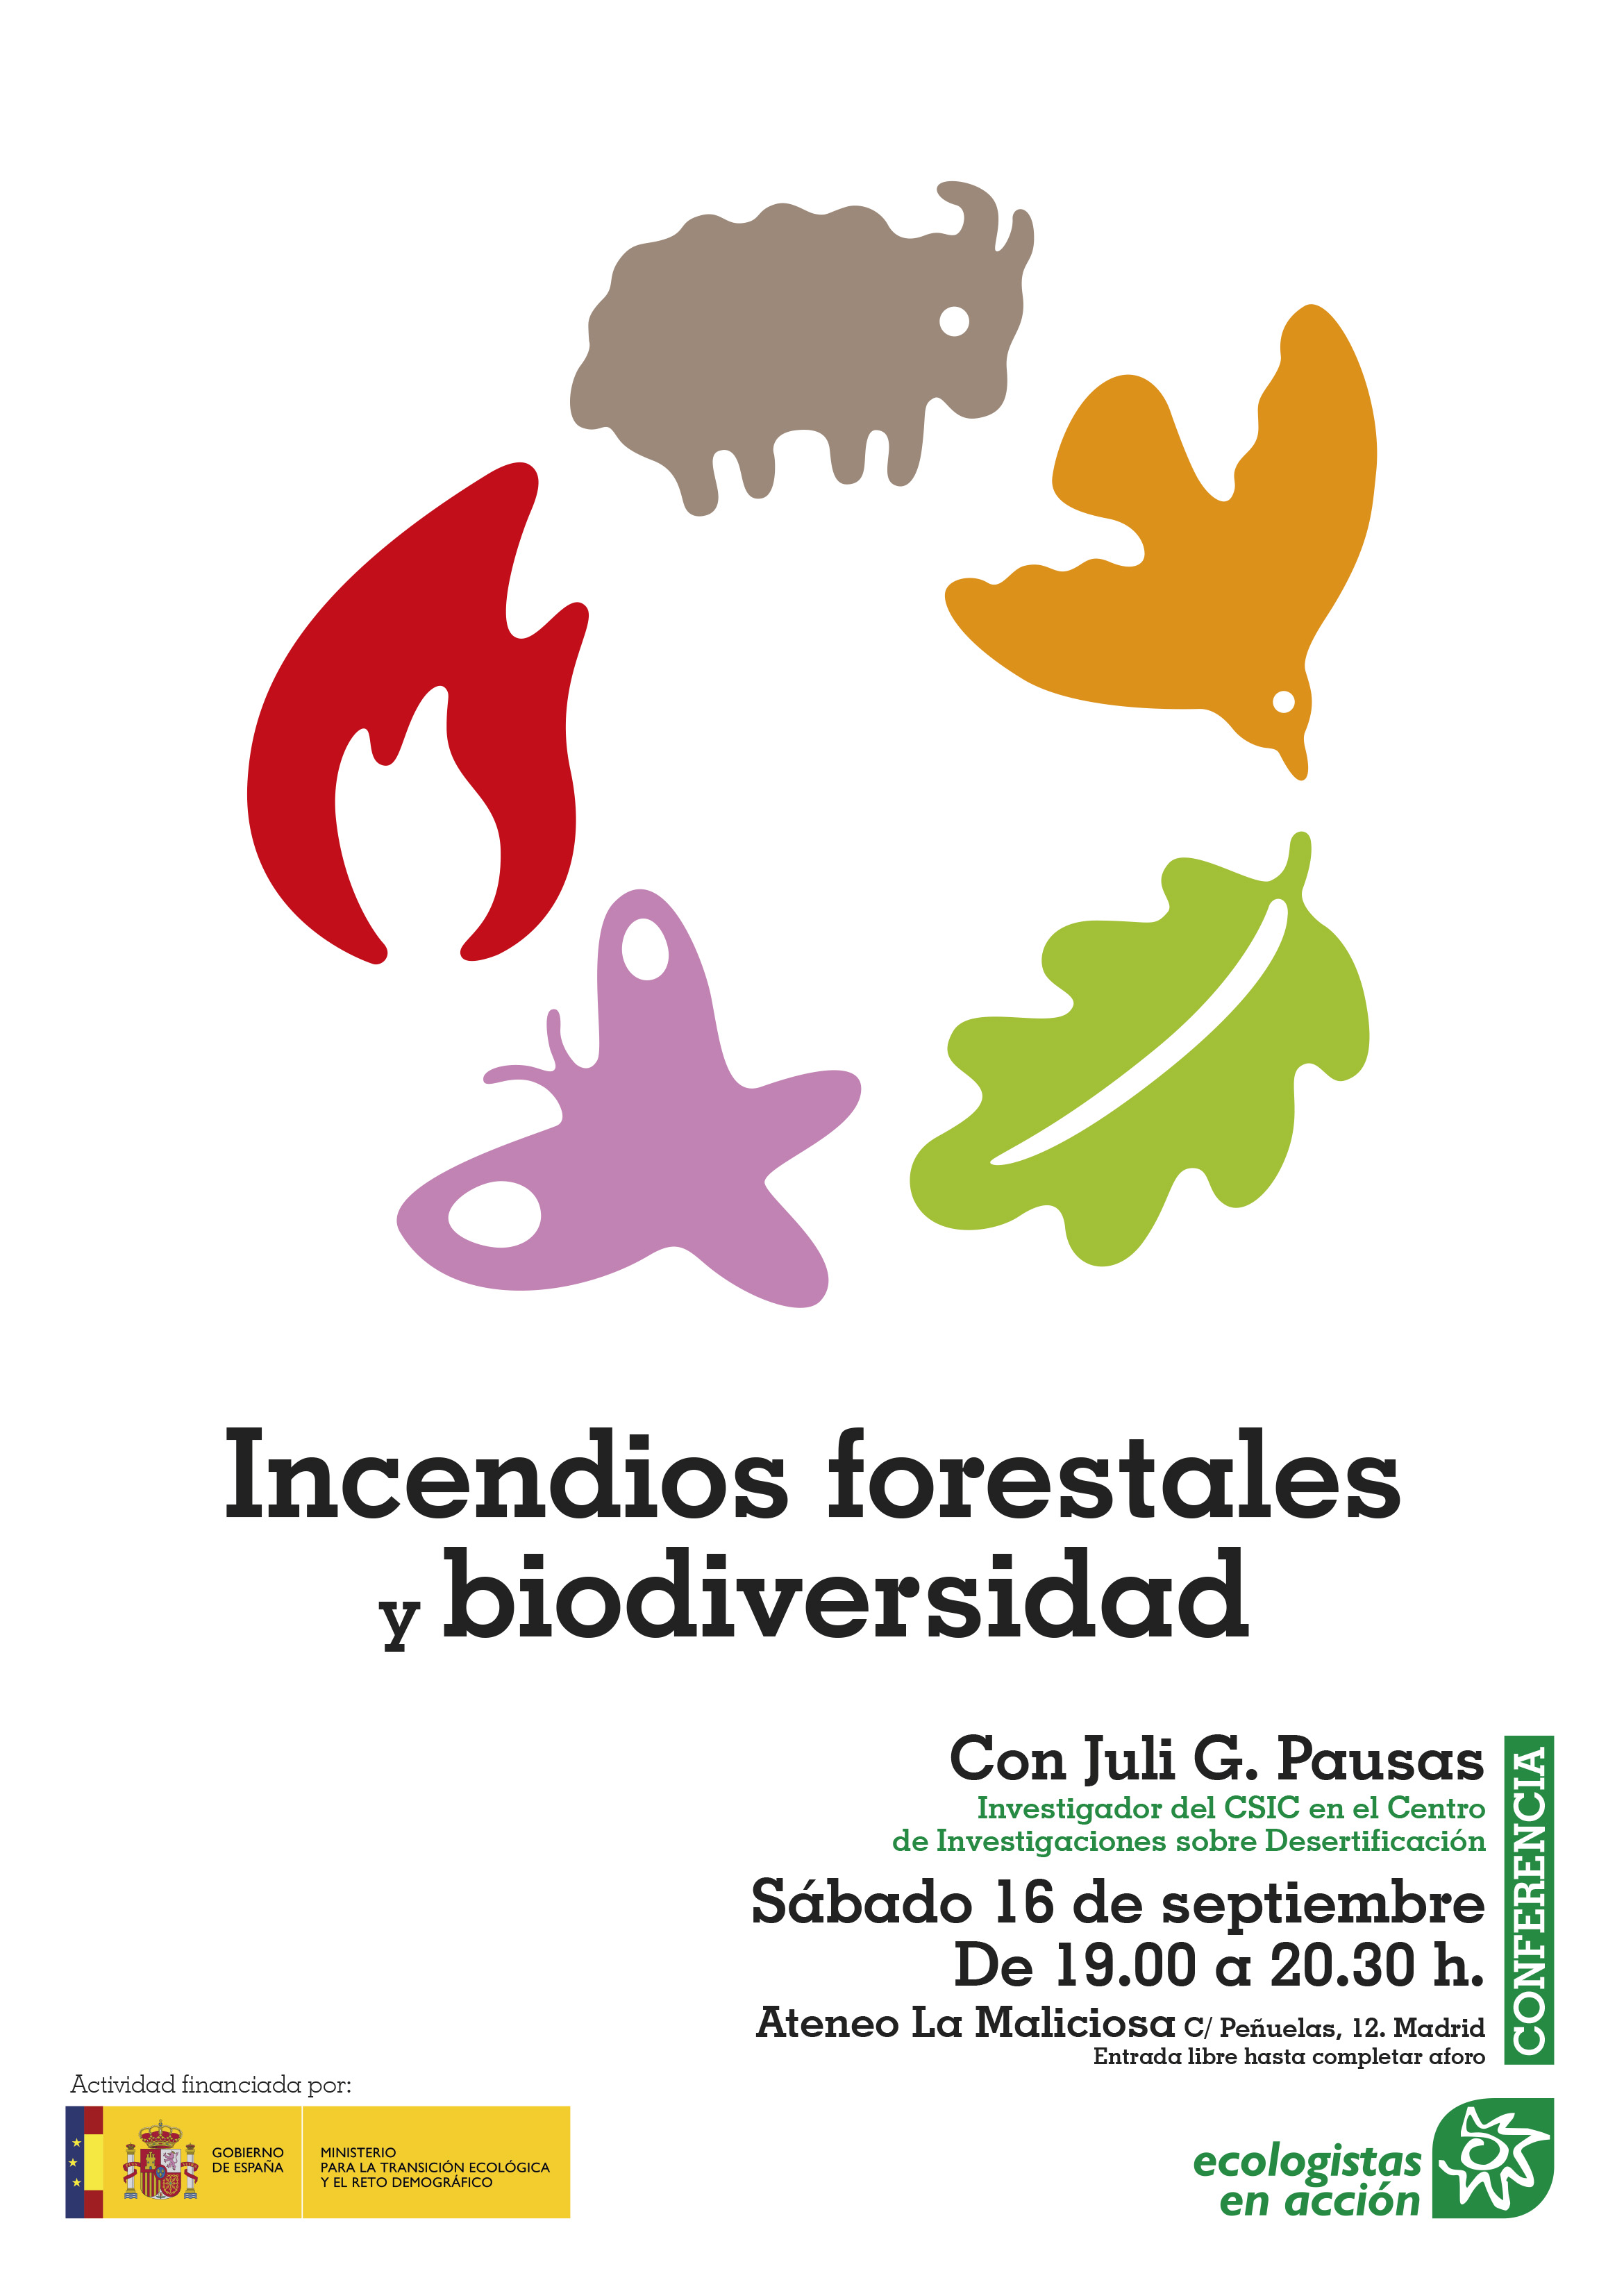 Incendios forestales y biodeviersidad